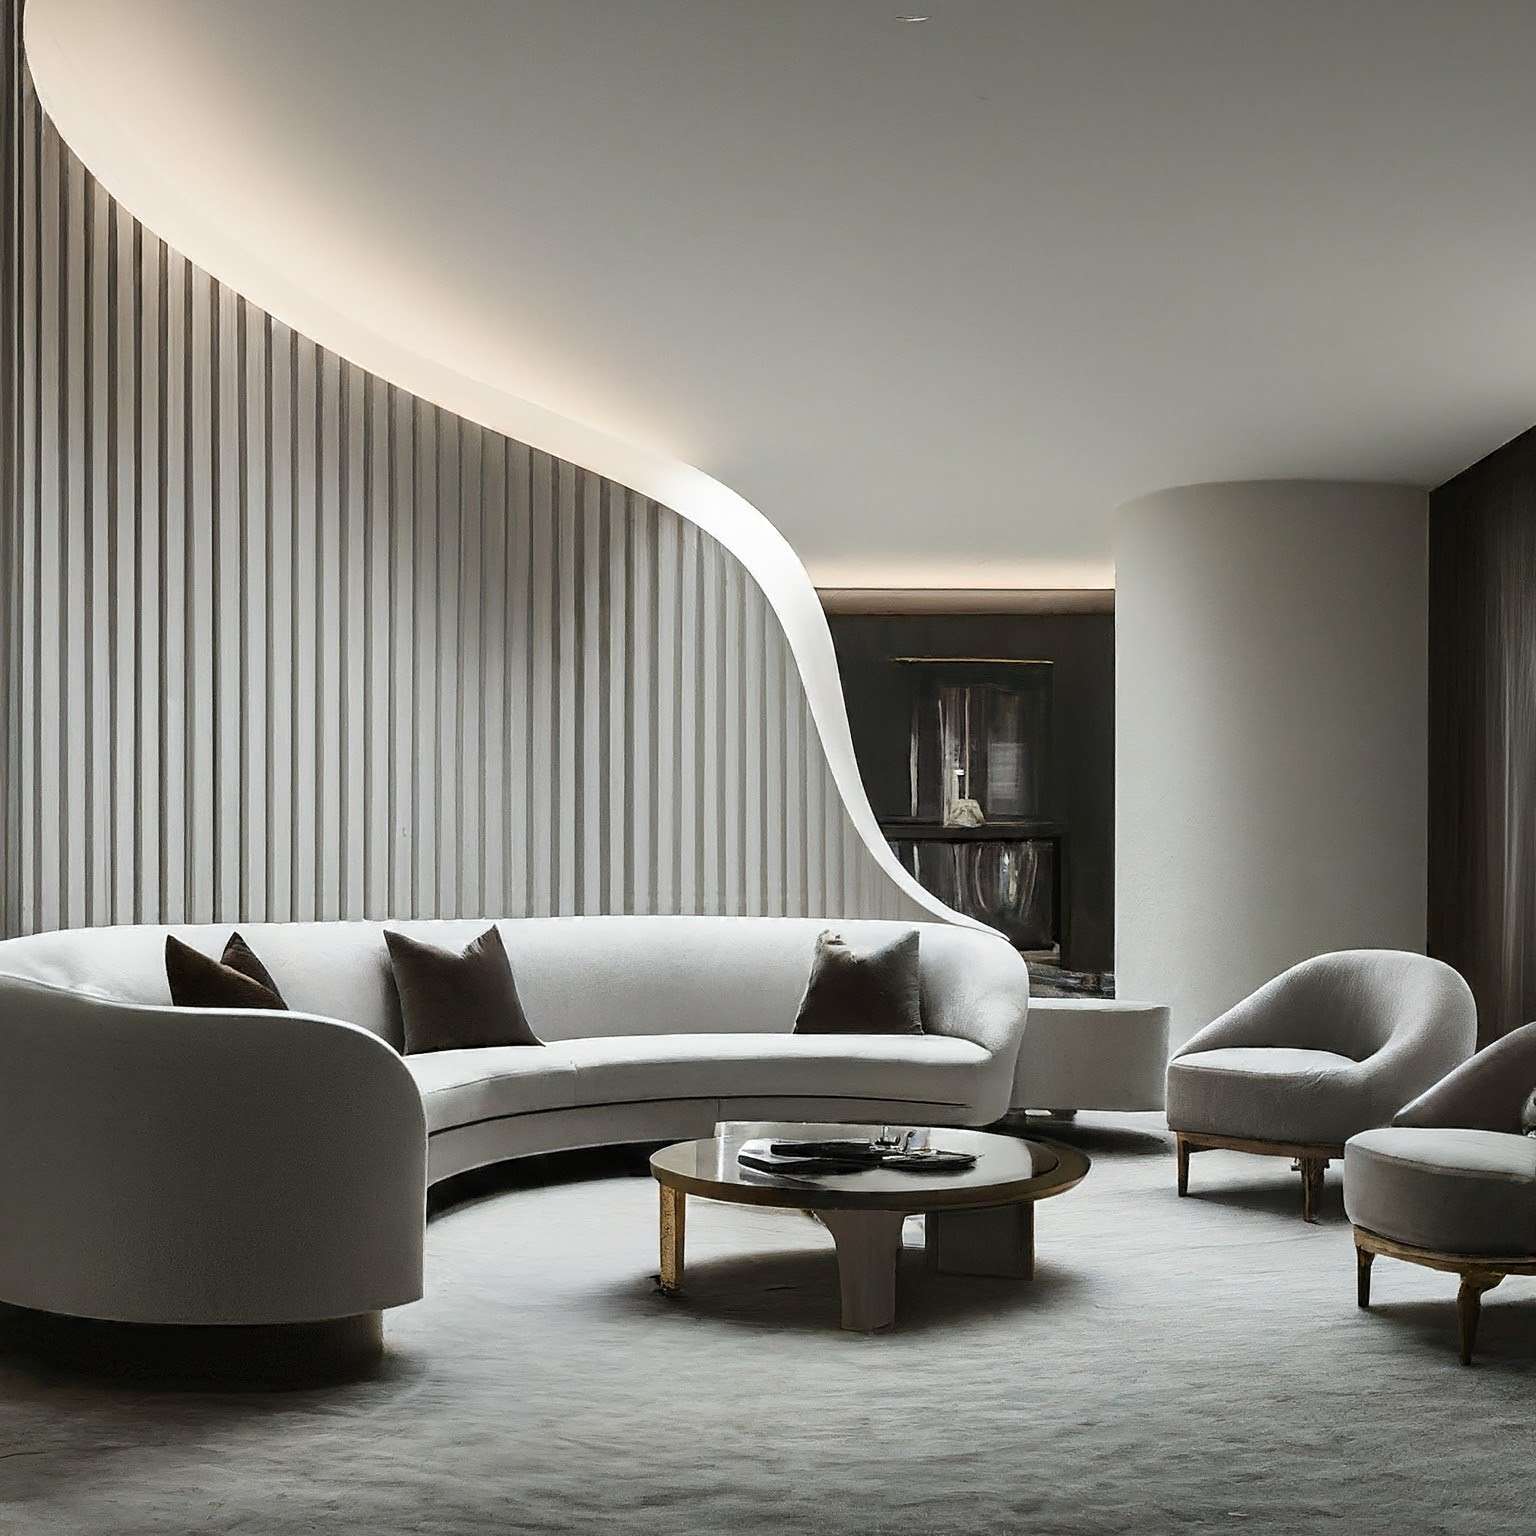 Curved Pop - Living Room Simple Pop Design